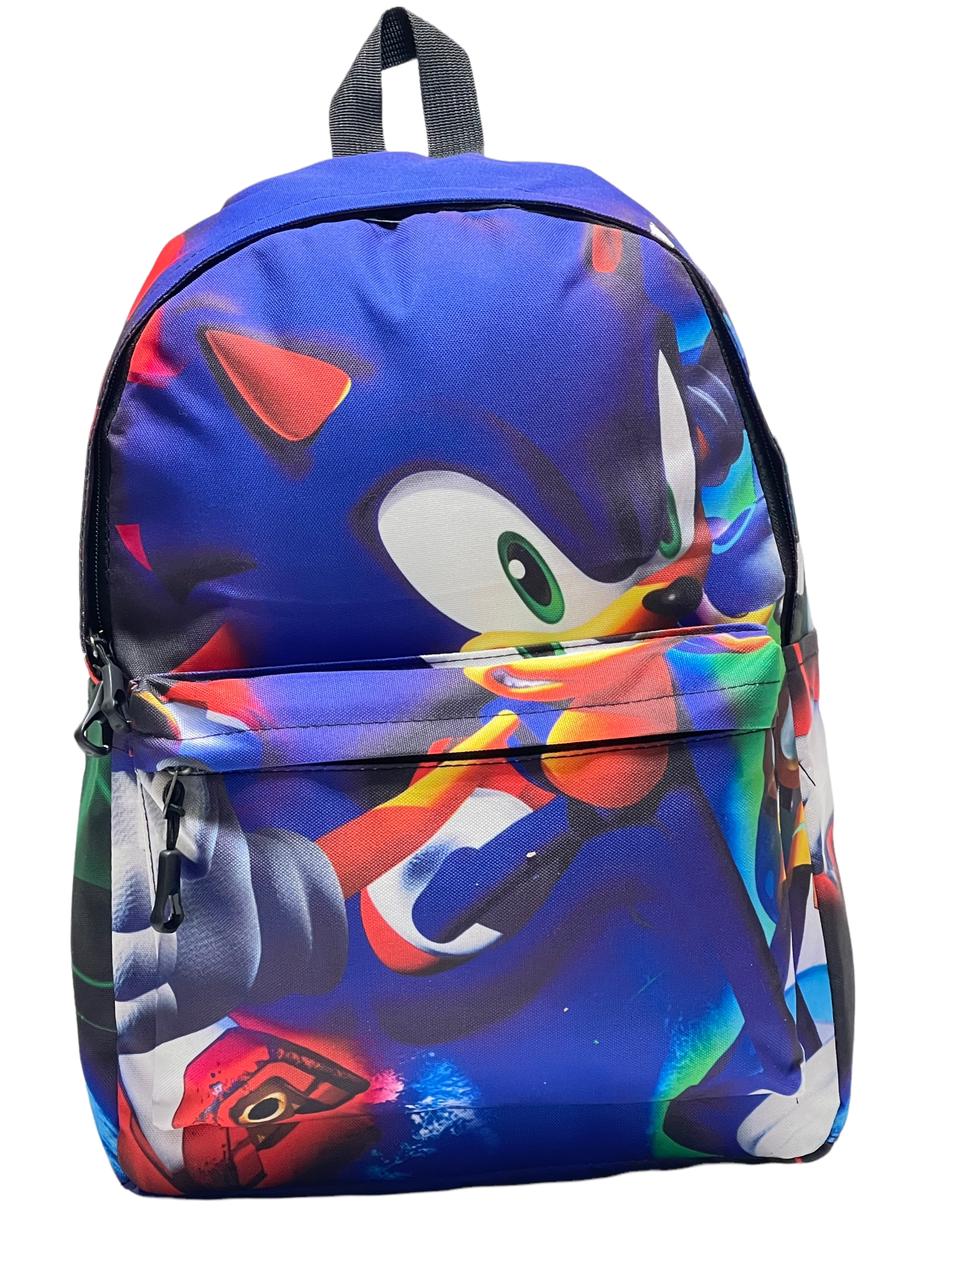 Рюкзак детский BAGS-ART Collection Sonic Sonic, синий, большой размер